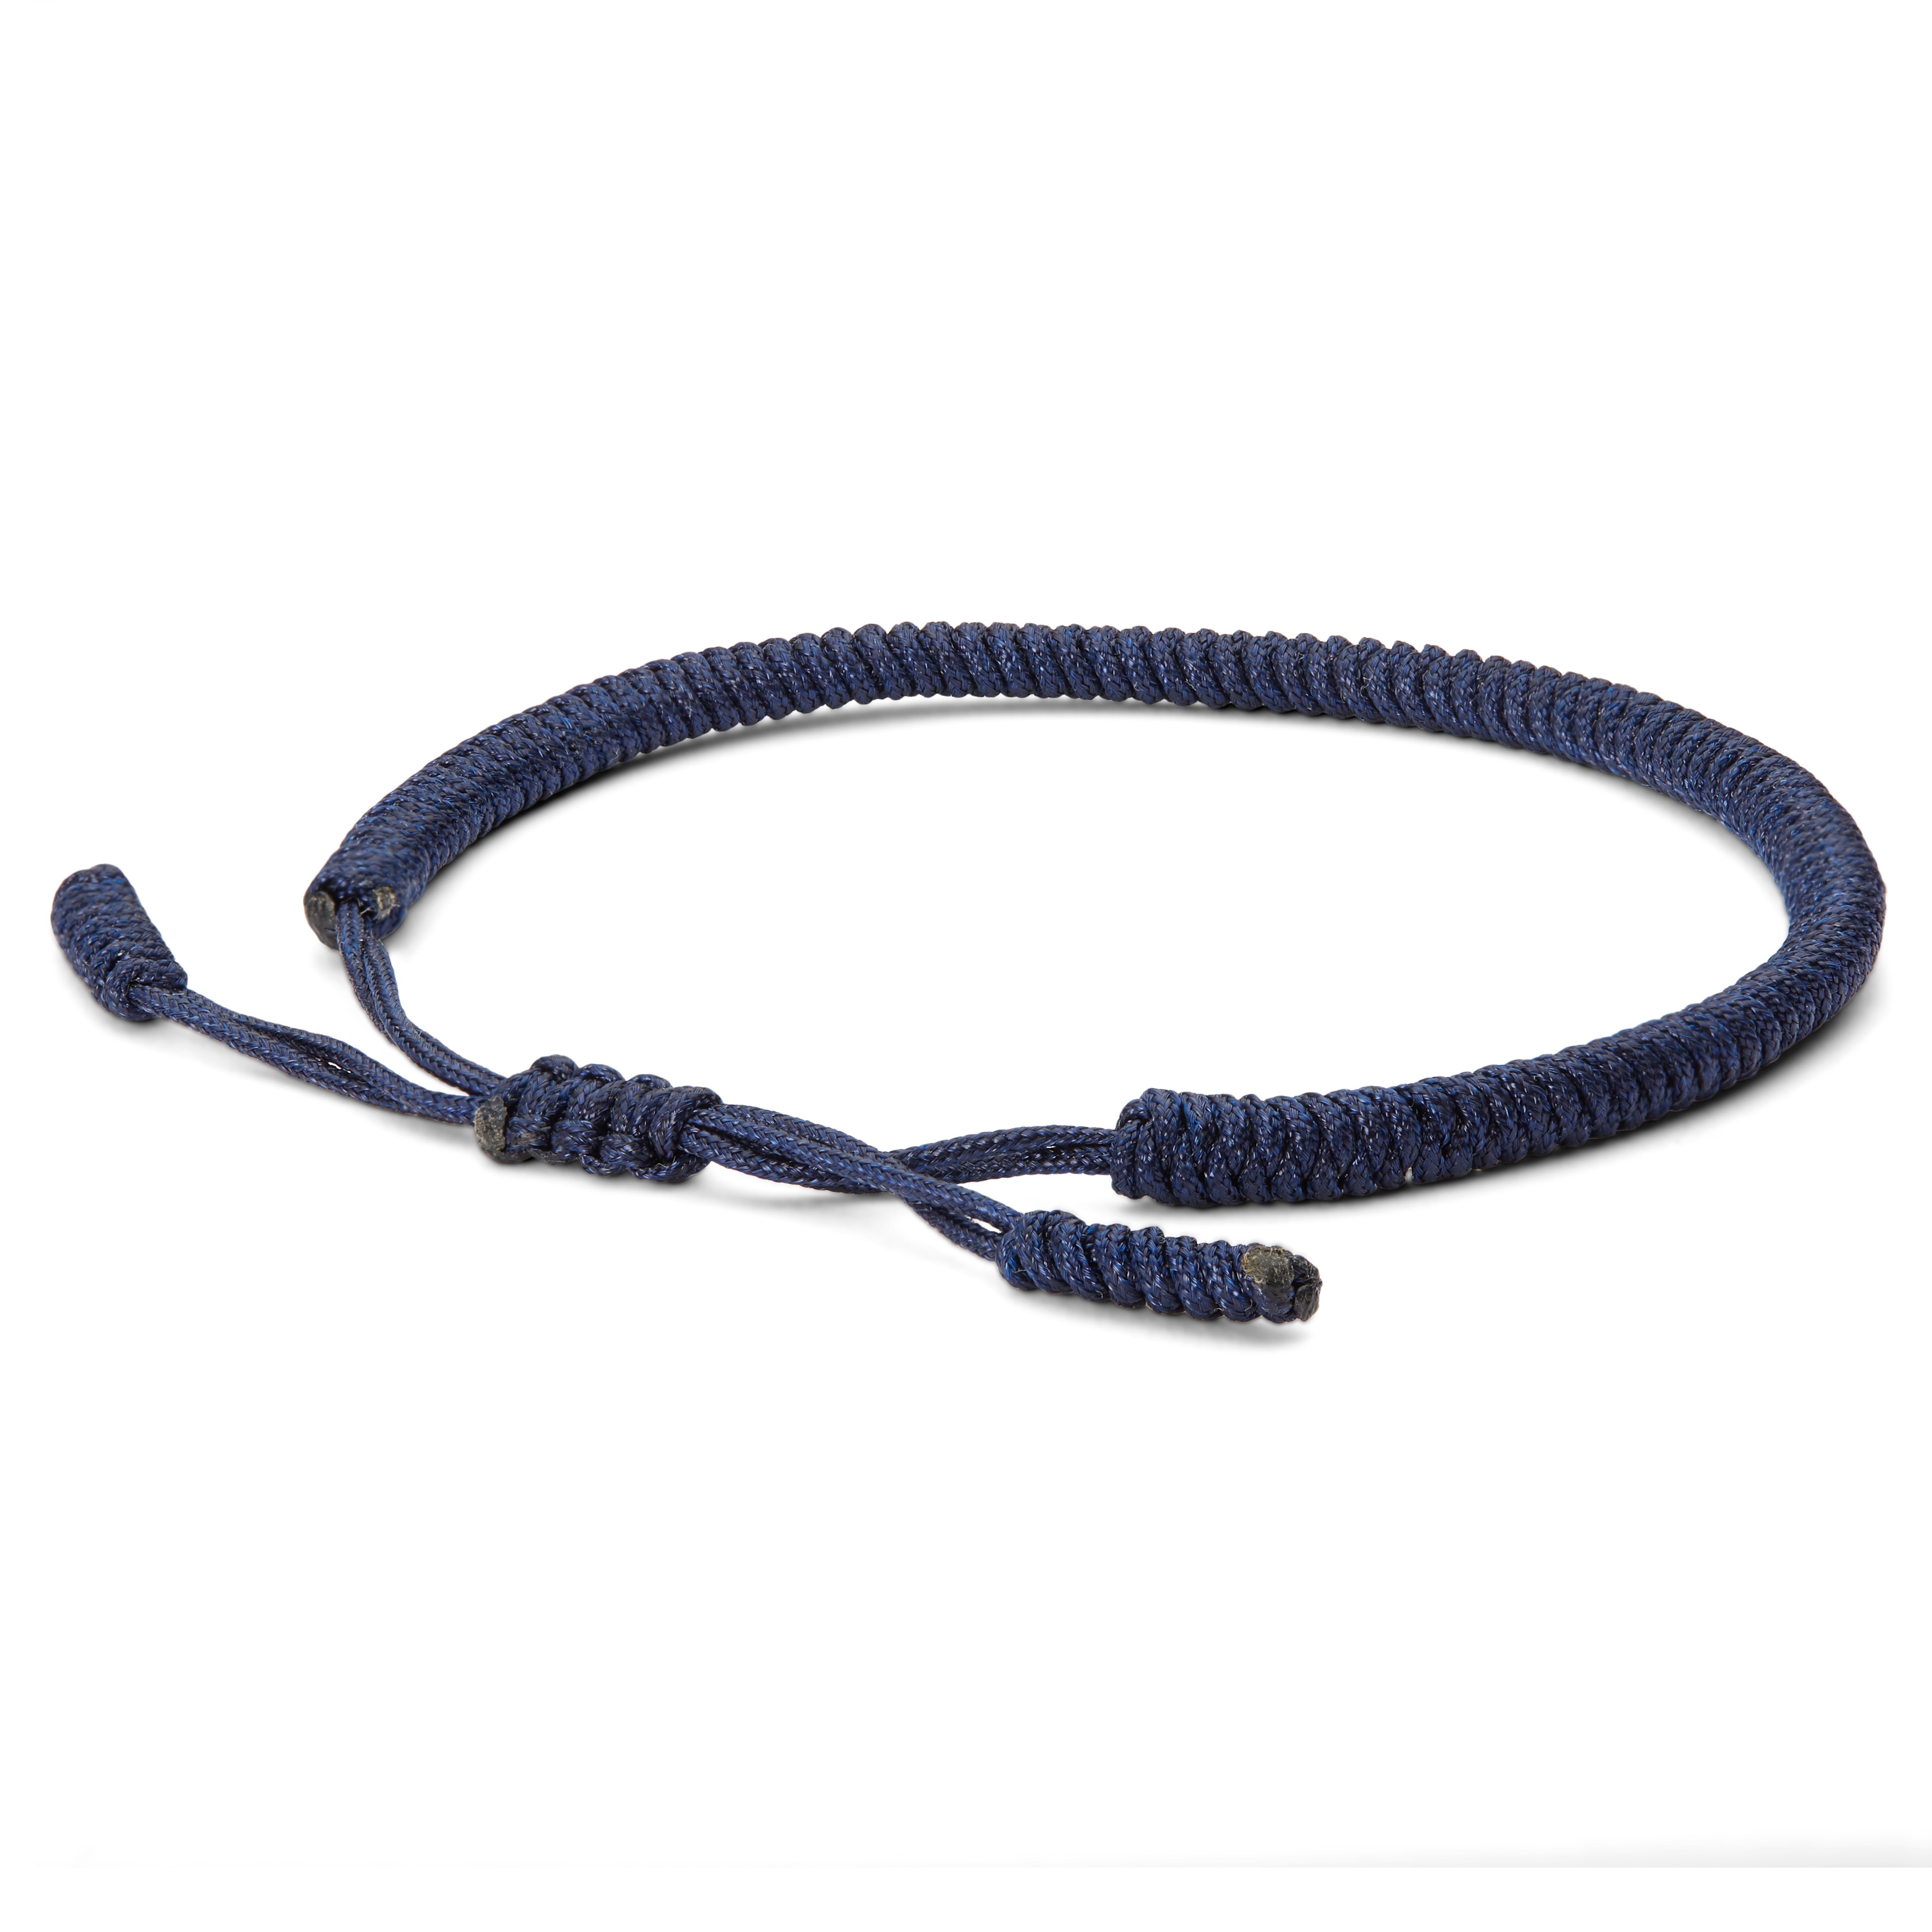 Buy Nylon Bracelets for Men - Binate Blue